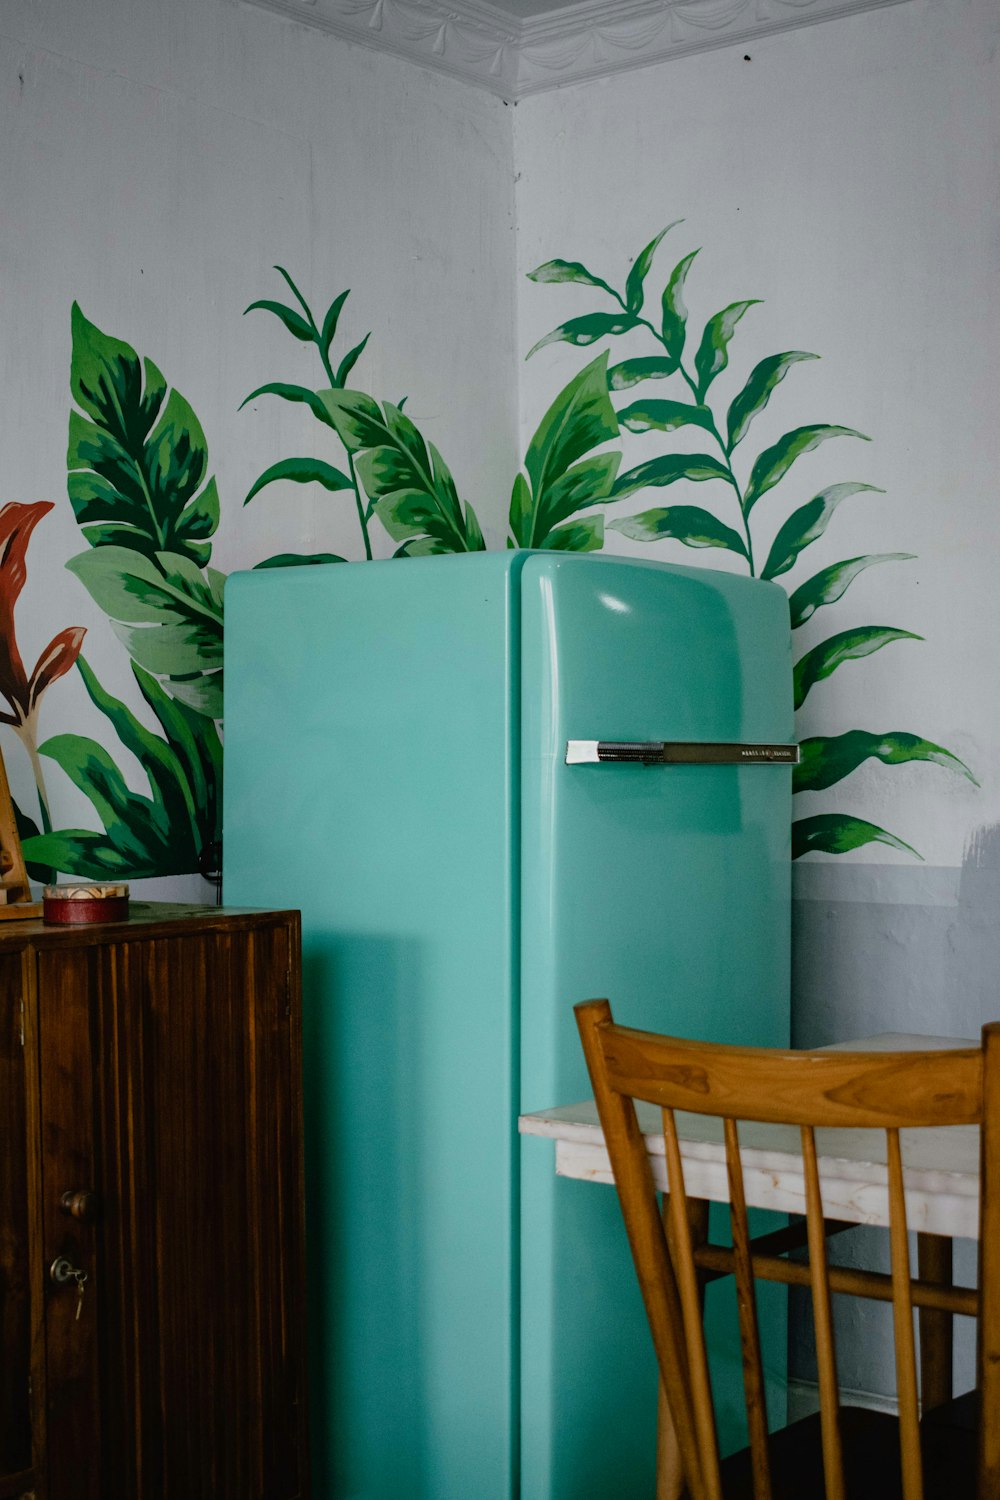 réfrigérateur bleu à côté d’une plante à feuilles vertes